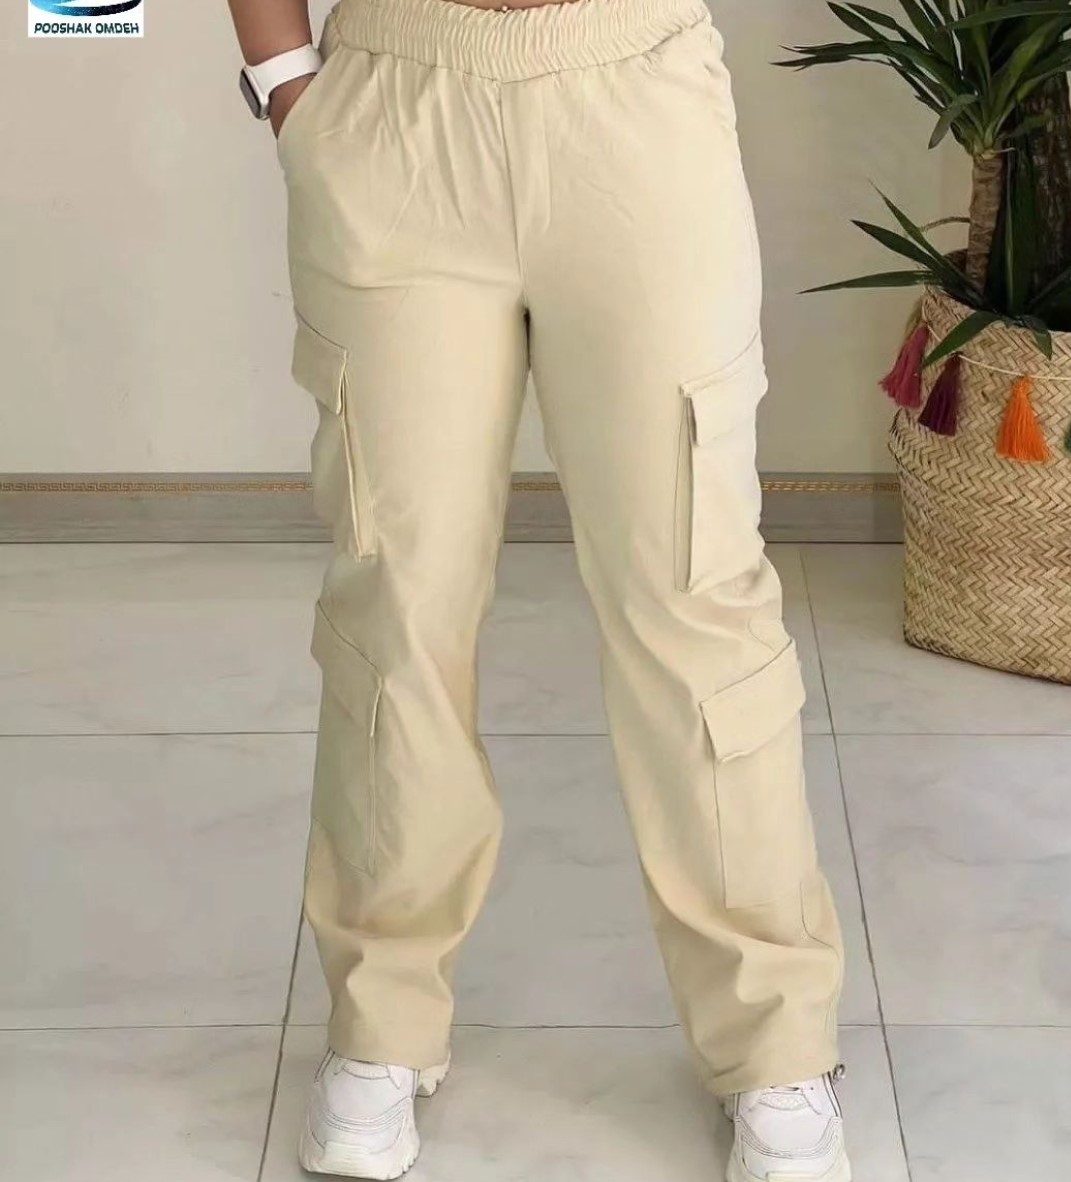 شلوار بگ کارگو 6 جیب کمرکش از جنس کتان کش فری سایز تا سایز 48 دارای رنگبندی